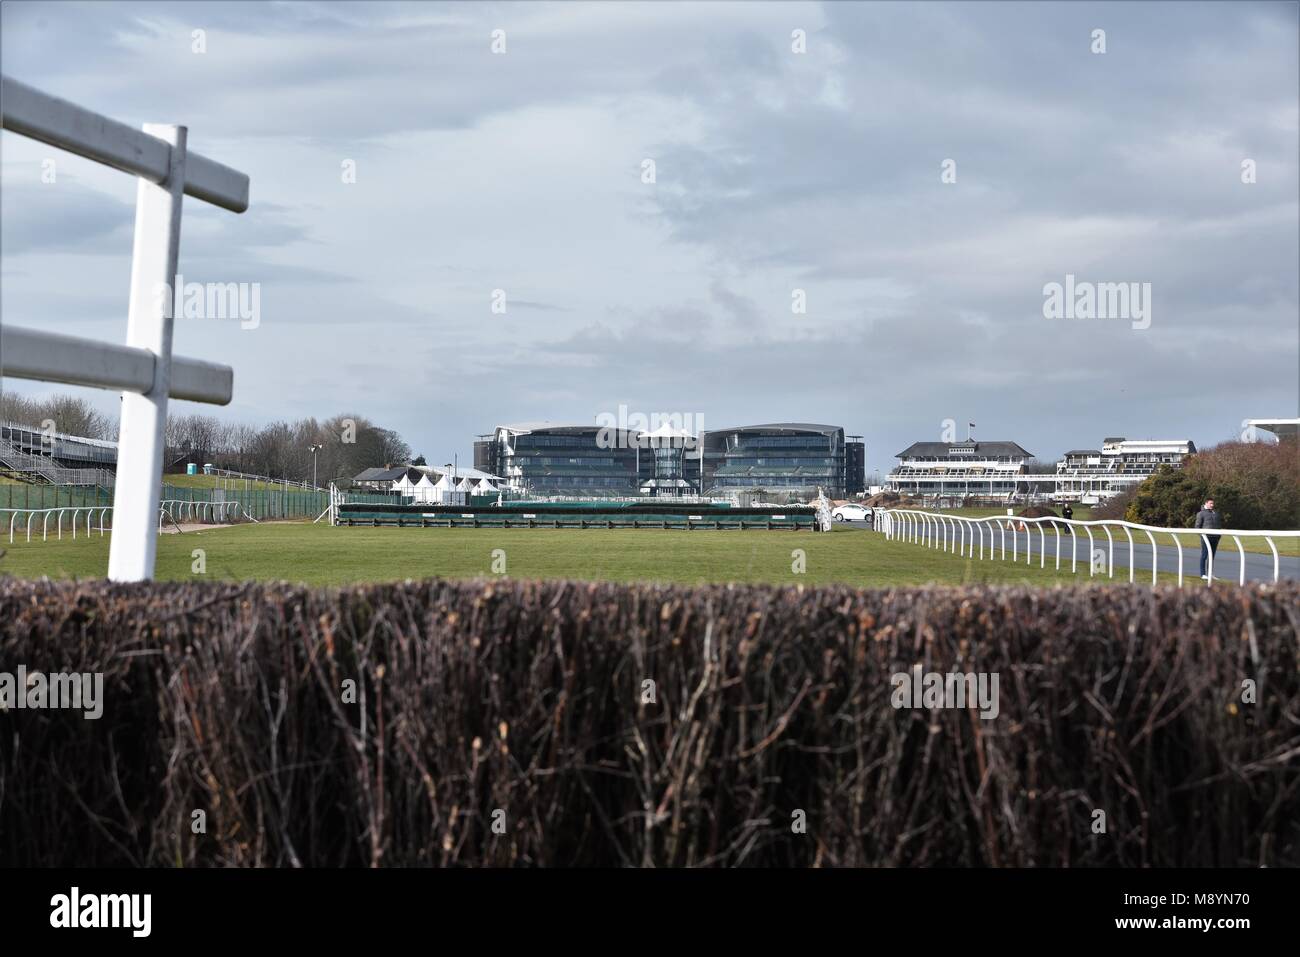 Il 10 marzo 2018. L'Aintree Racecourse, Liverpool, Regno Unito. Vista del corso e le tribune del corso stesso. Foto Stock